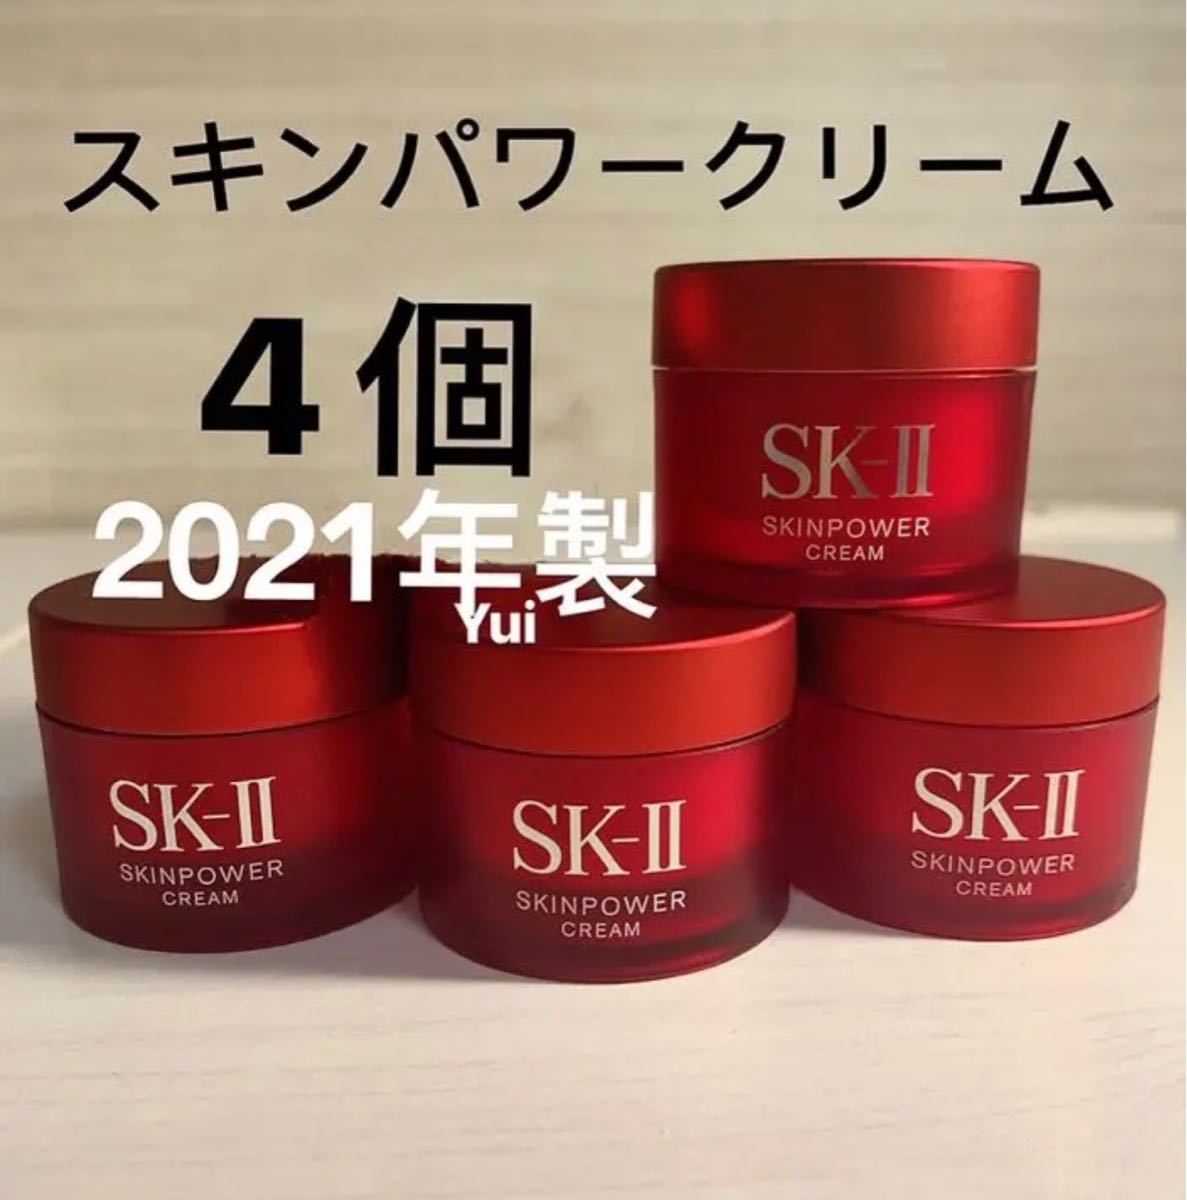 SK-II スキンパワークリーム美容クリーム 90g (15g×6セット) - 通販